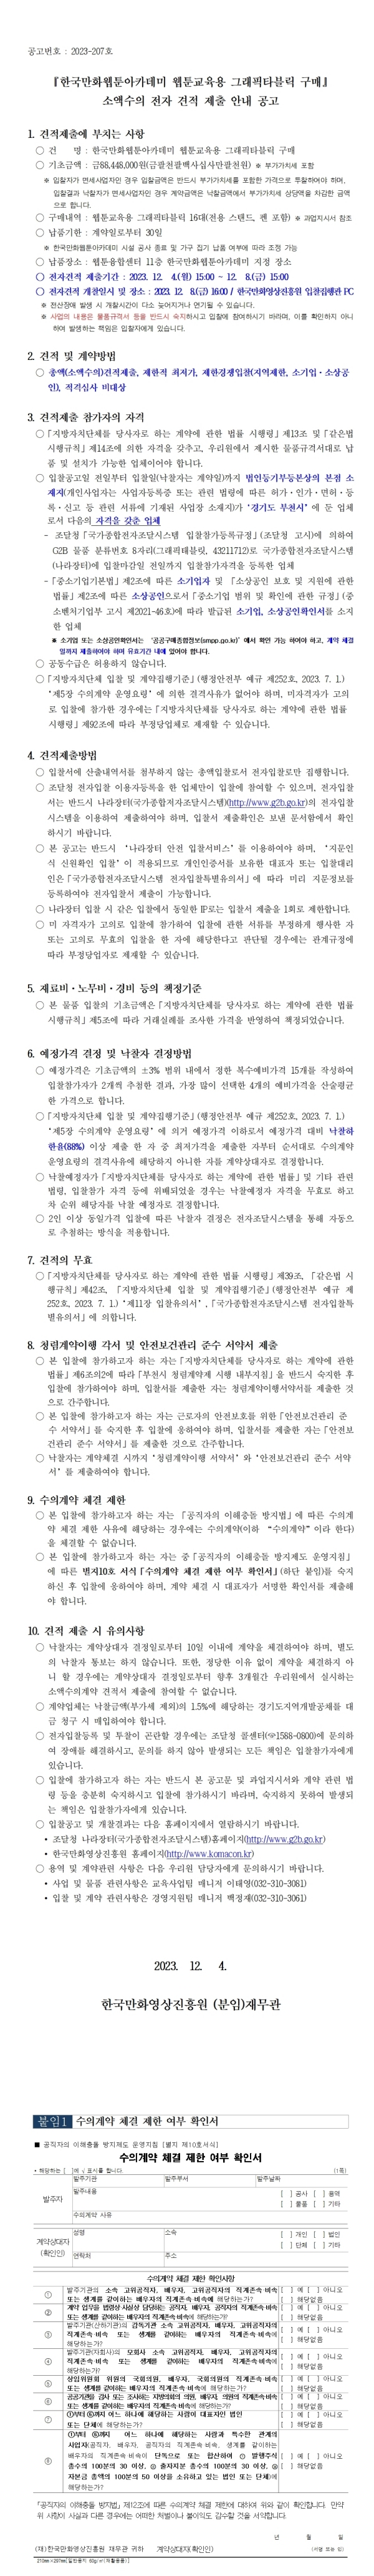 『한국만화웹툰아카데미 웹툰교육용 그래픽타블릿 구매』 소액수의 전자 견적 제출 안내 공고